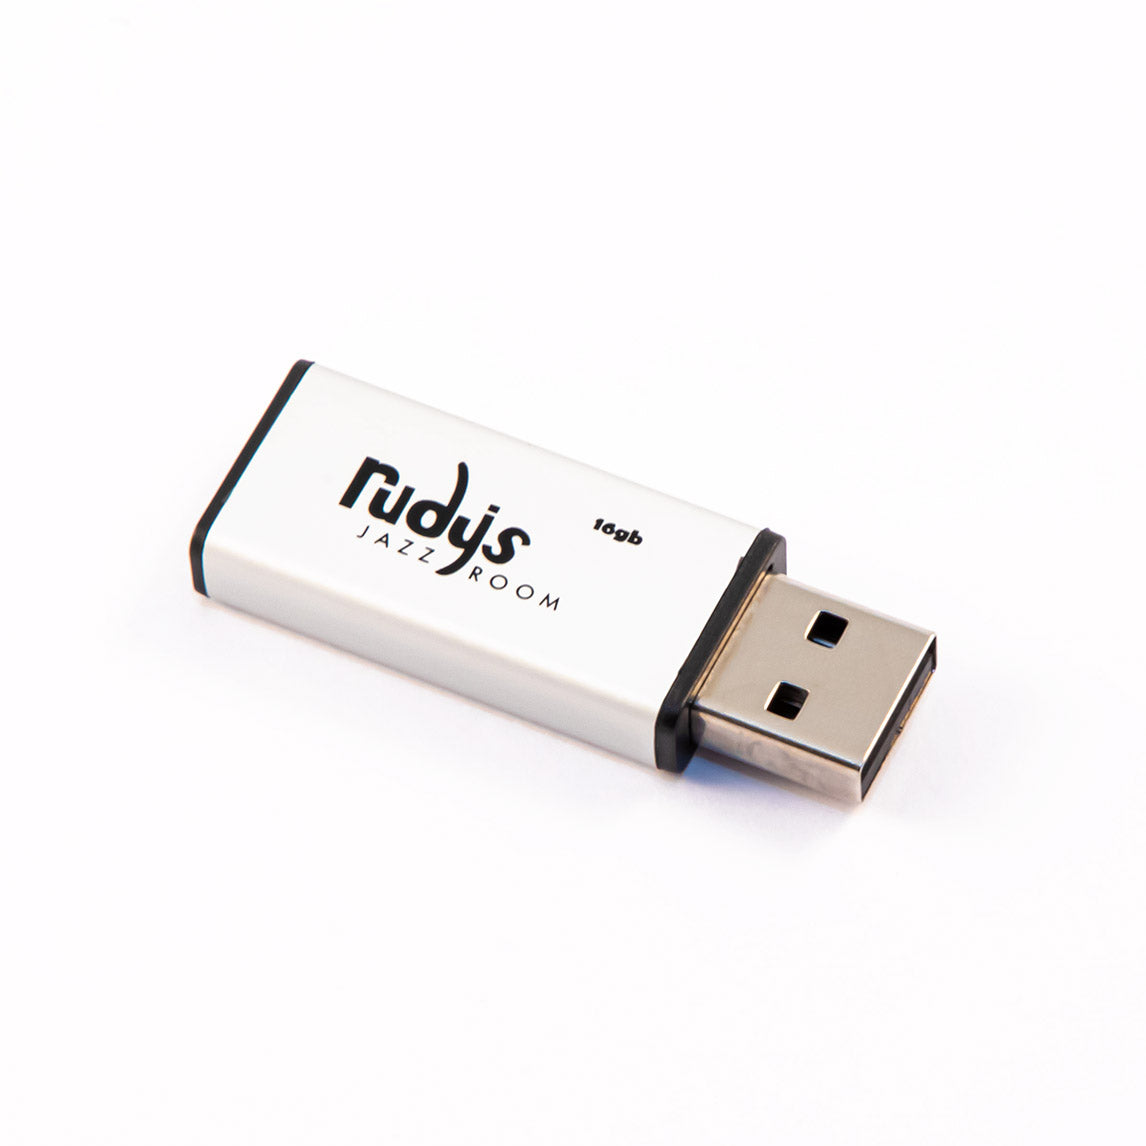 Løse Krydret højttaler Rudy's 16GB Mini USB Flash Drive – Rudy's Jazz Room